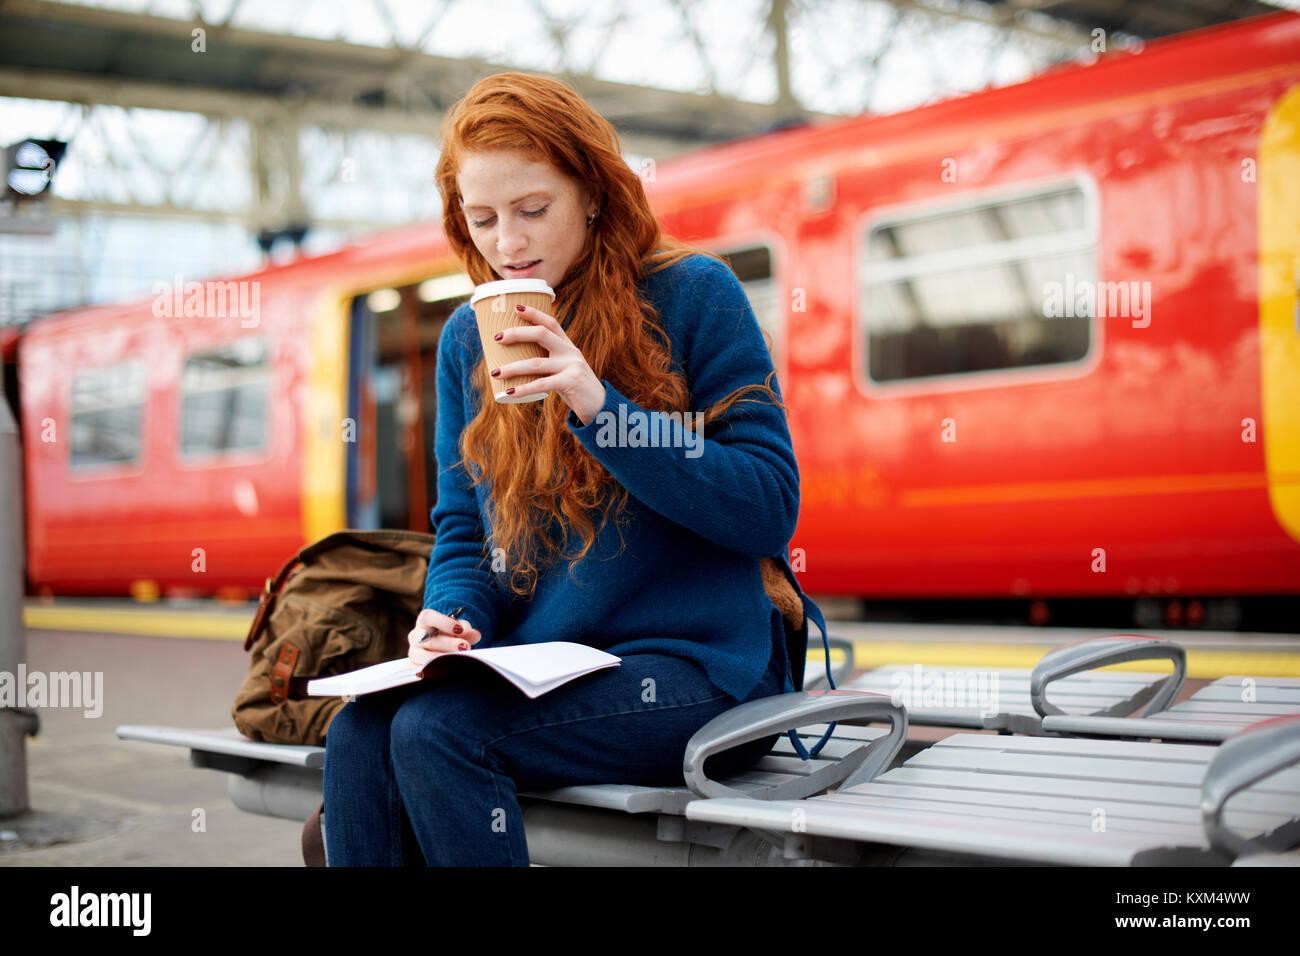 Frau auf der Bank am Bahnsteig, London Stockfoto